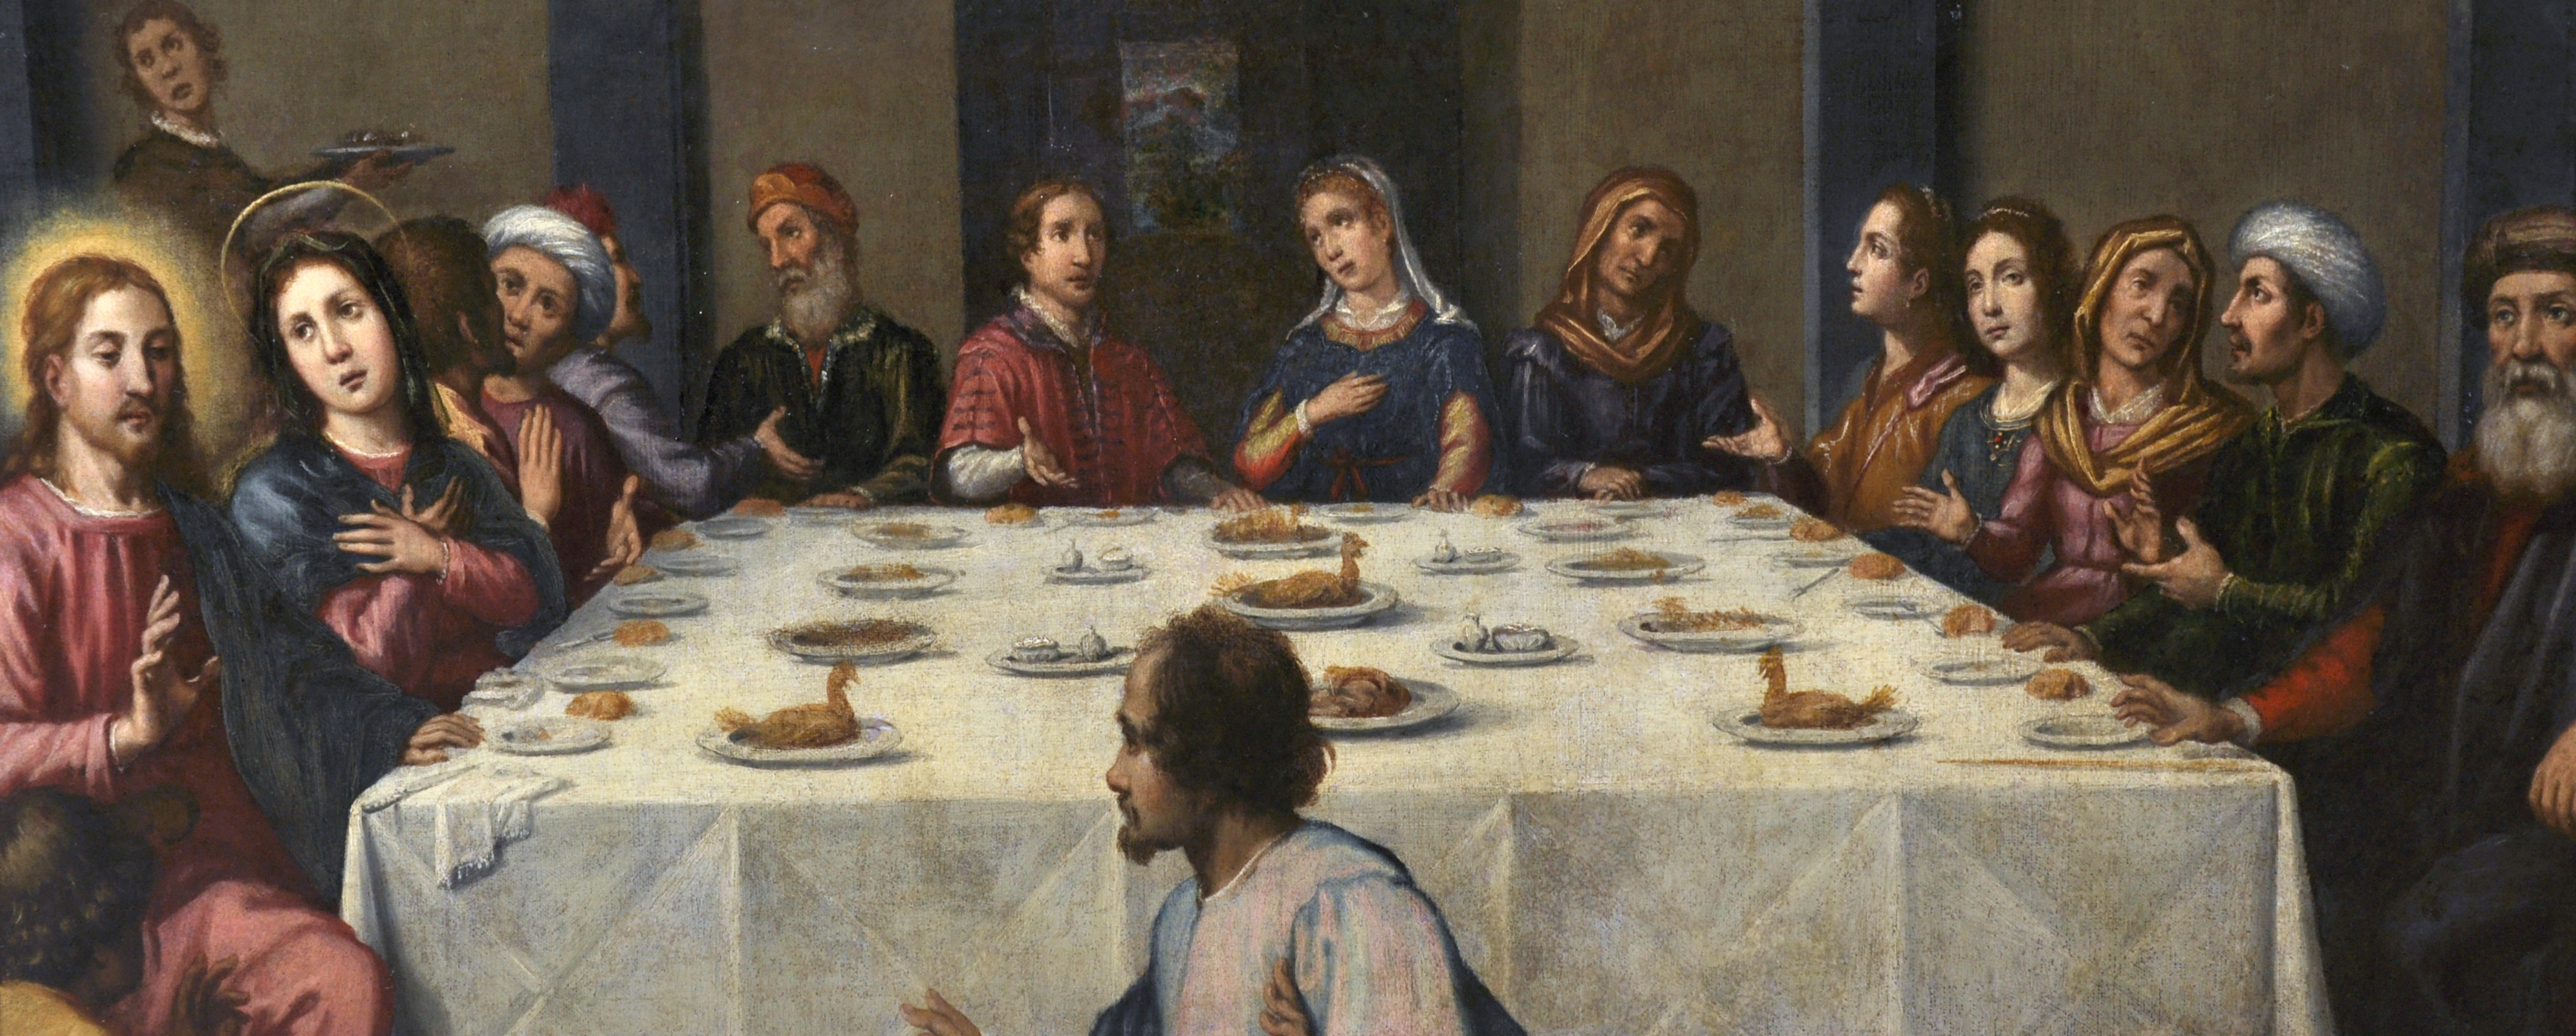 Circle of Jacopo Chimenti da Empoli (1551-1640) Italian. 'The Wedding Feast at Cana' Oil on